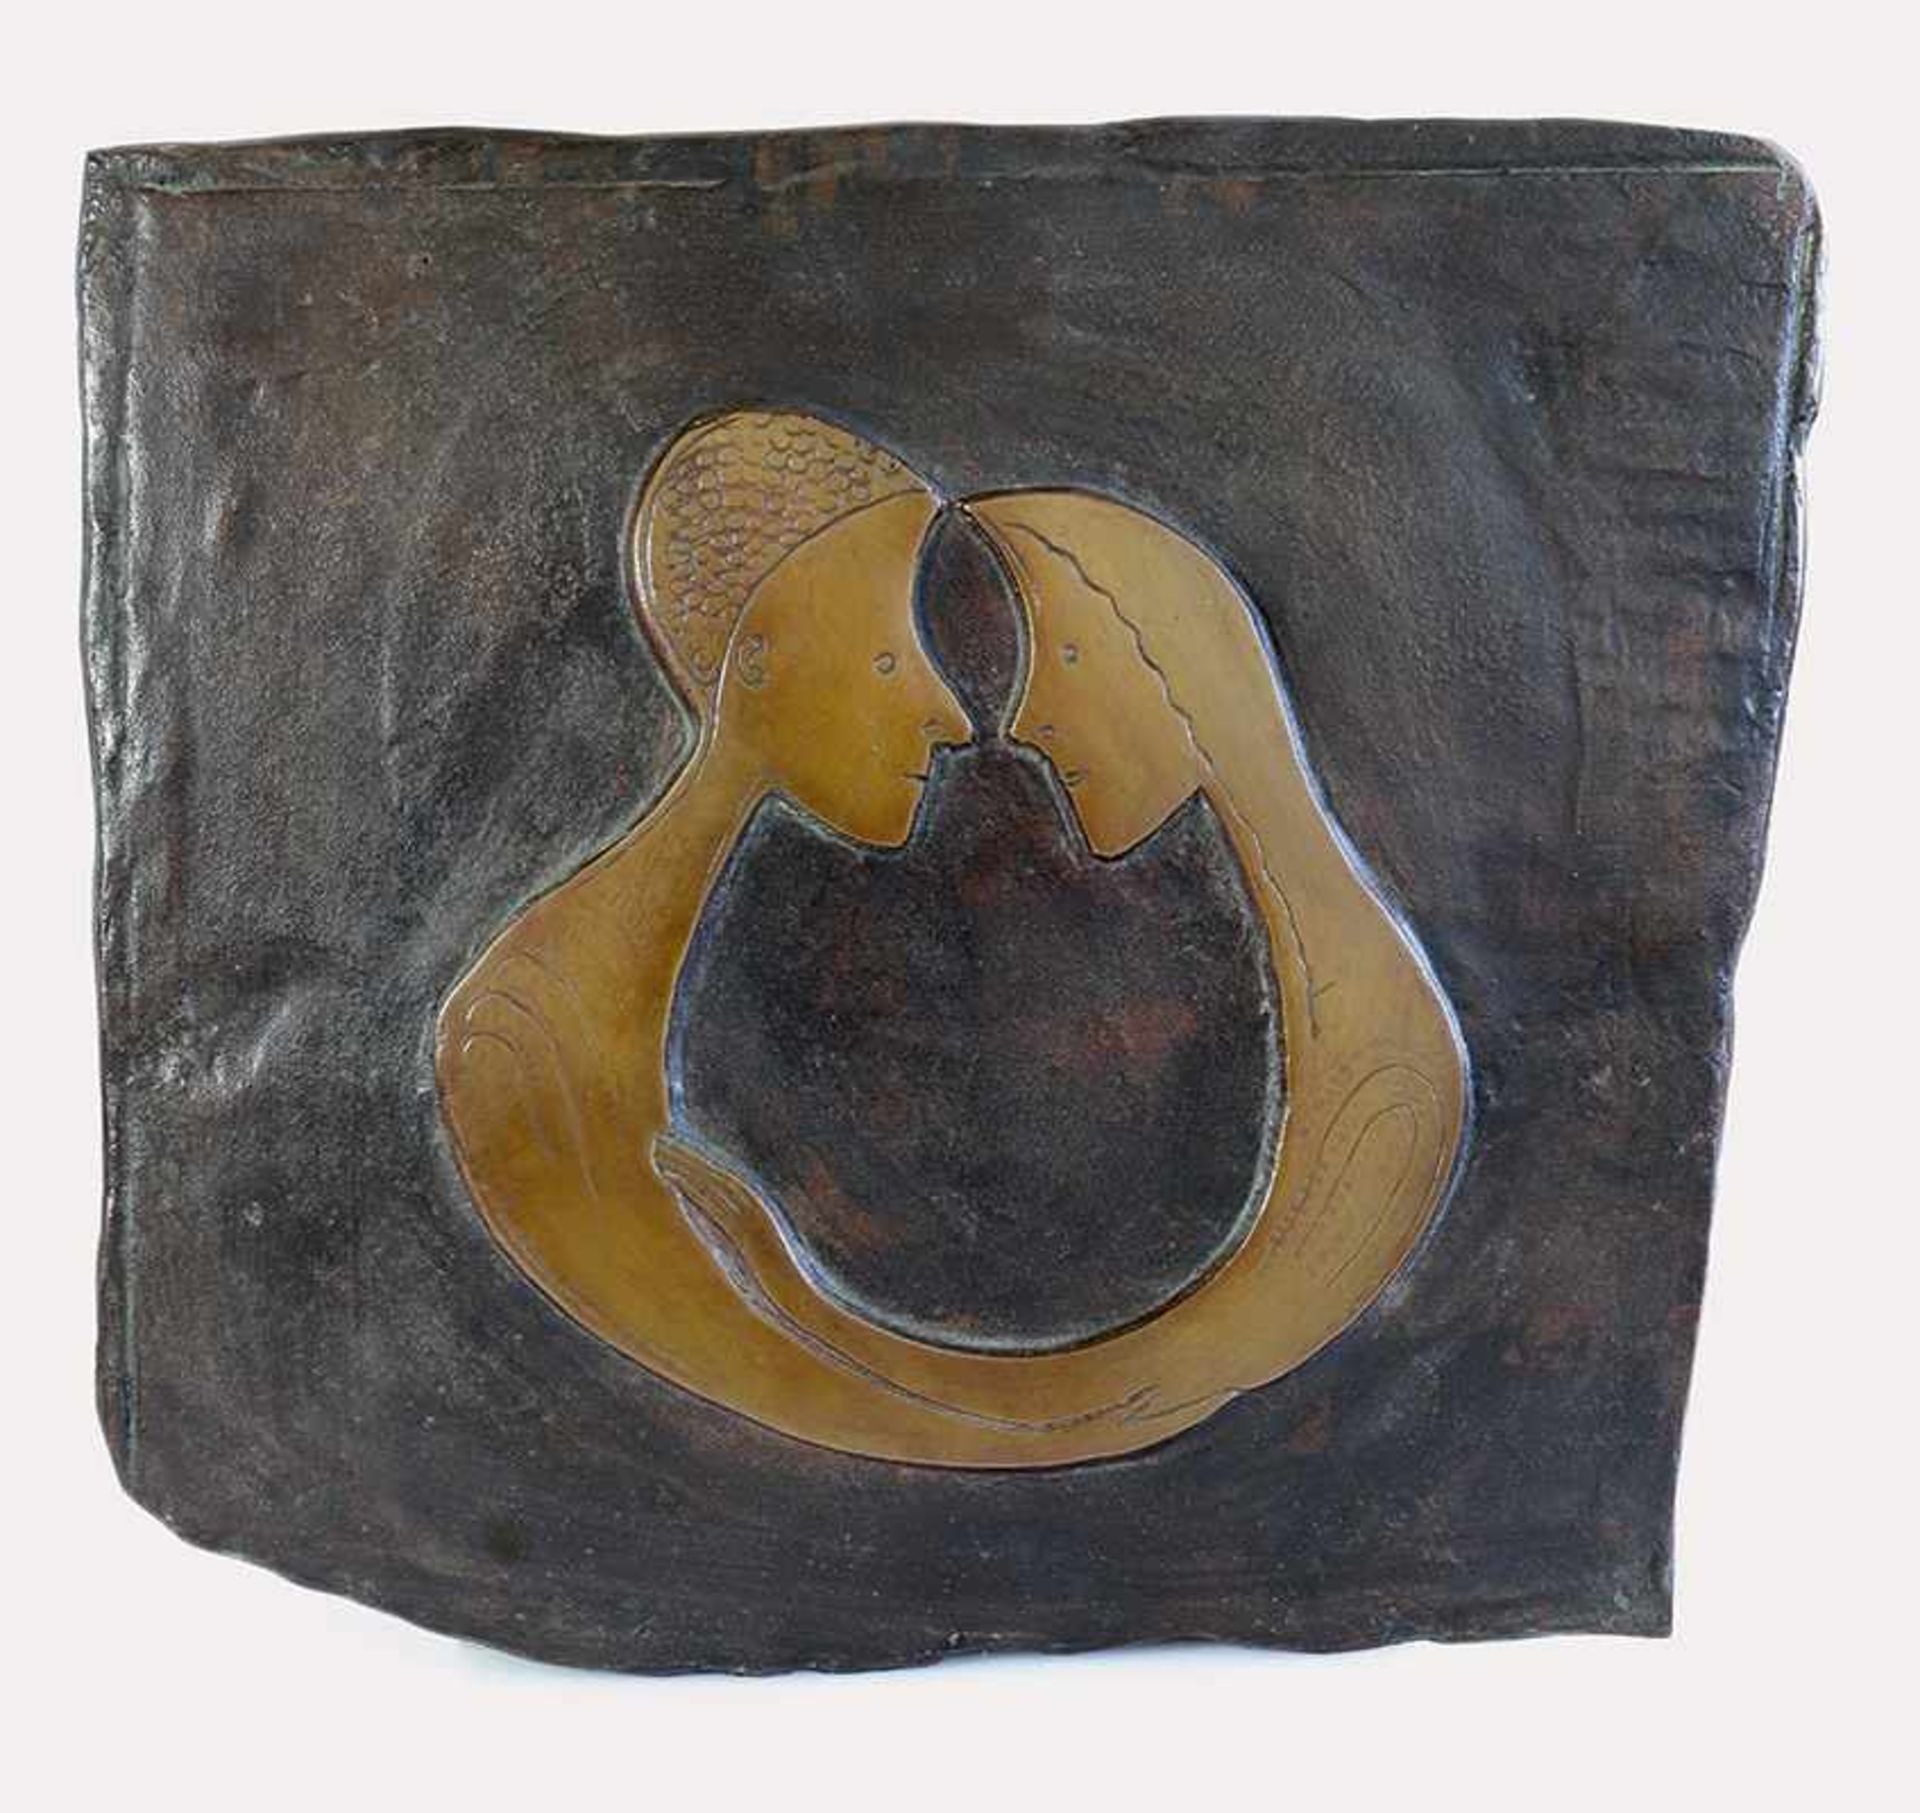 Zueinander I Ewald Mataré* (1887-1965) 1953 Bronzerelief, partiell patiniert. Minimales Maß 30,4 x